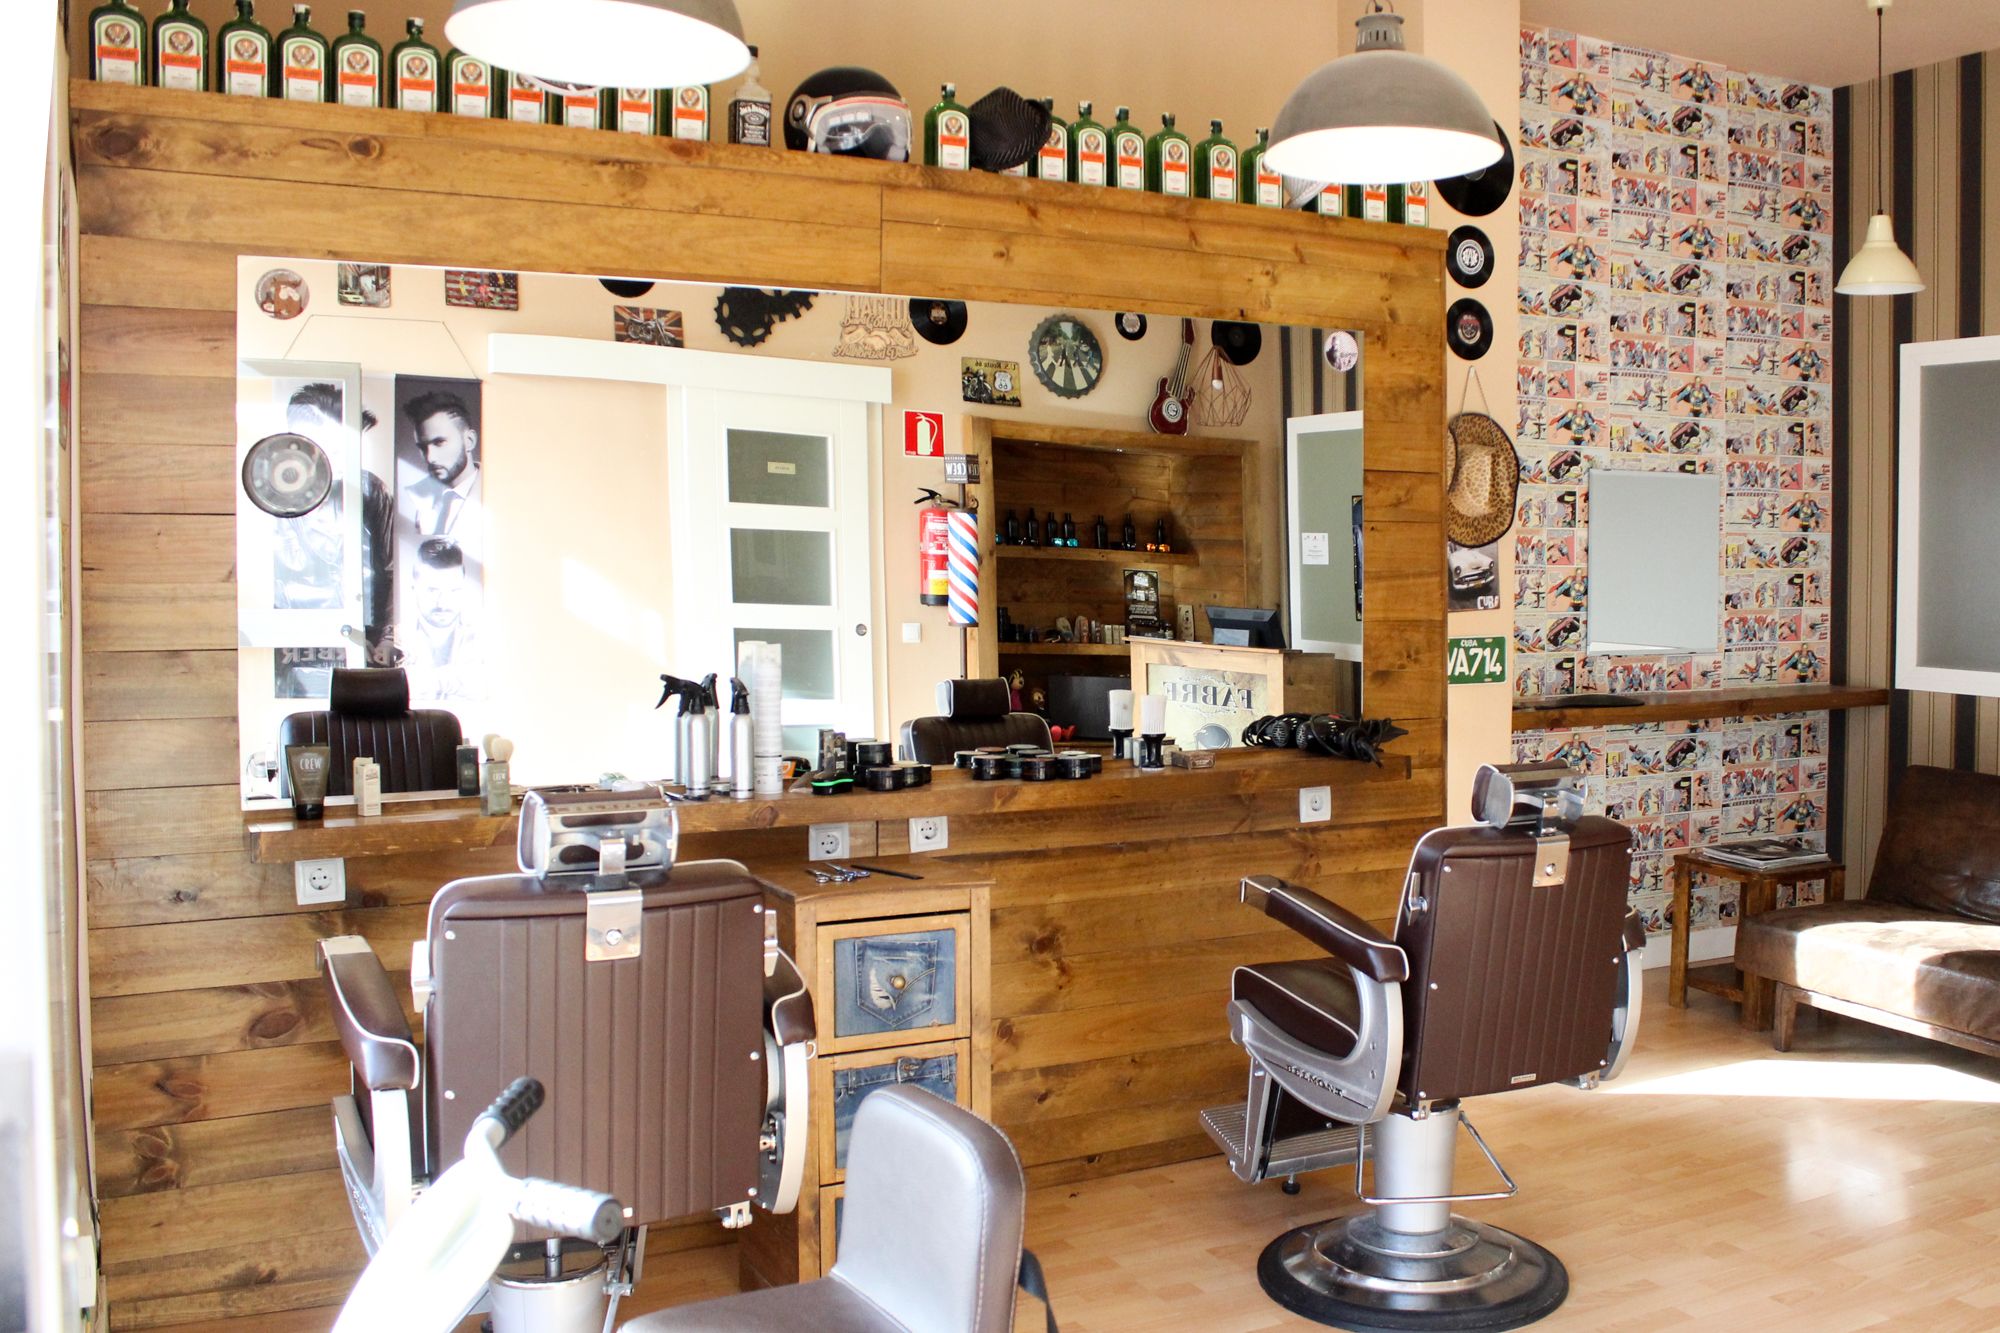 Foto 10 de Peluquería y barbería en Parla | Fabre Barber Shop